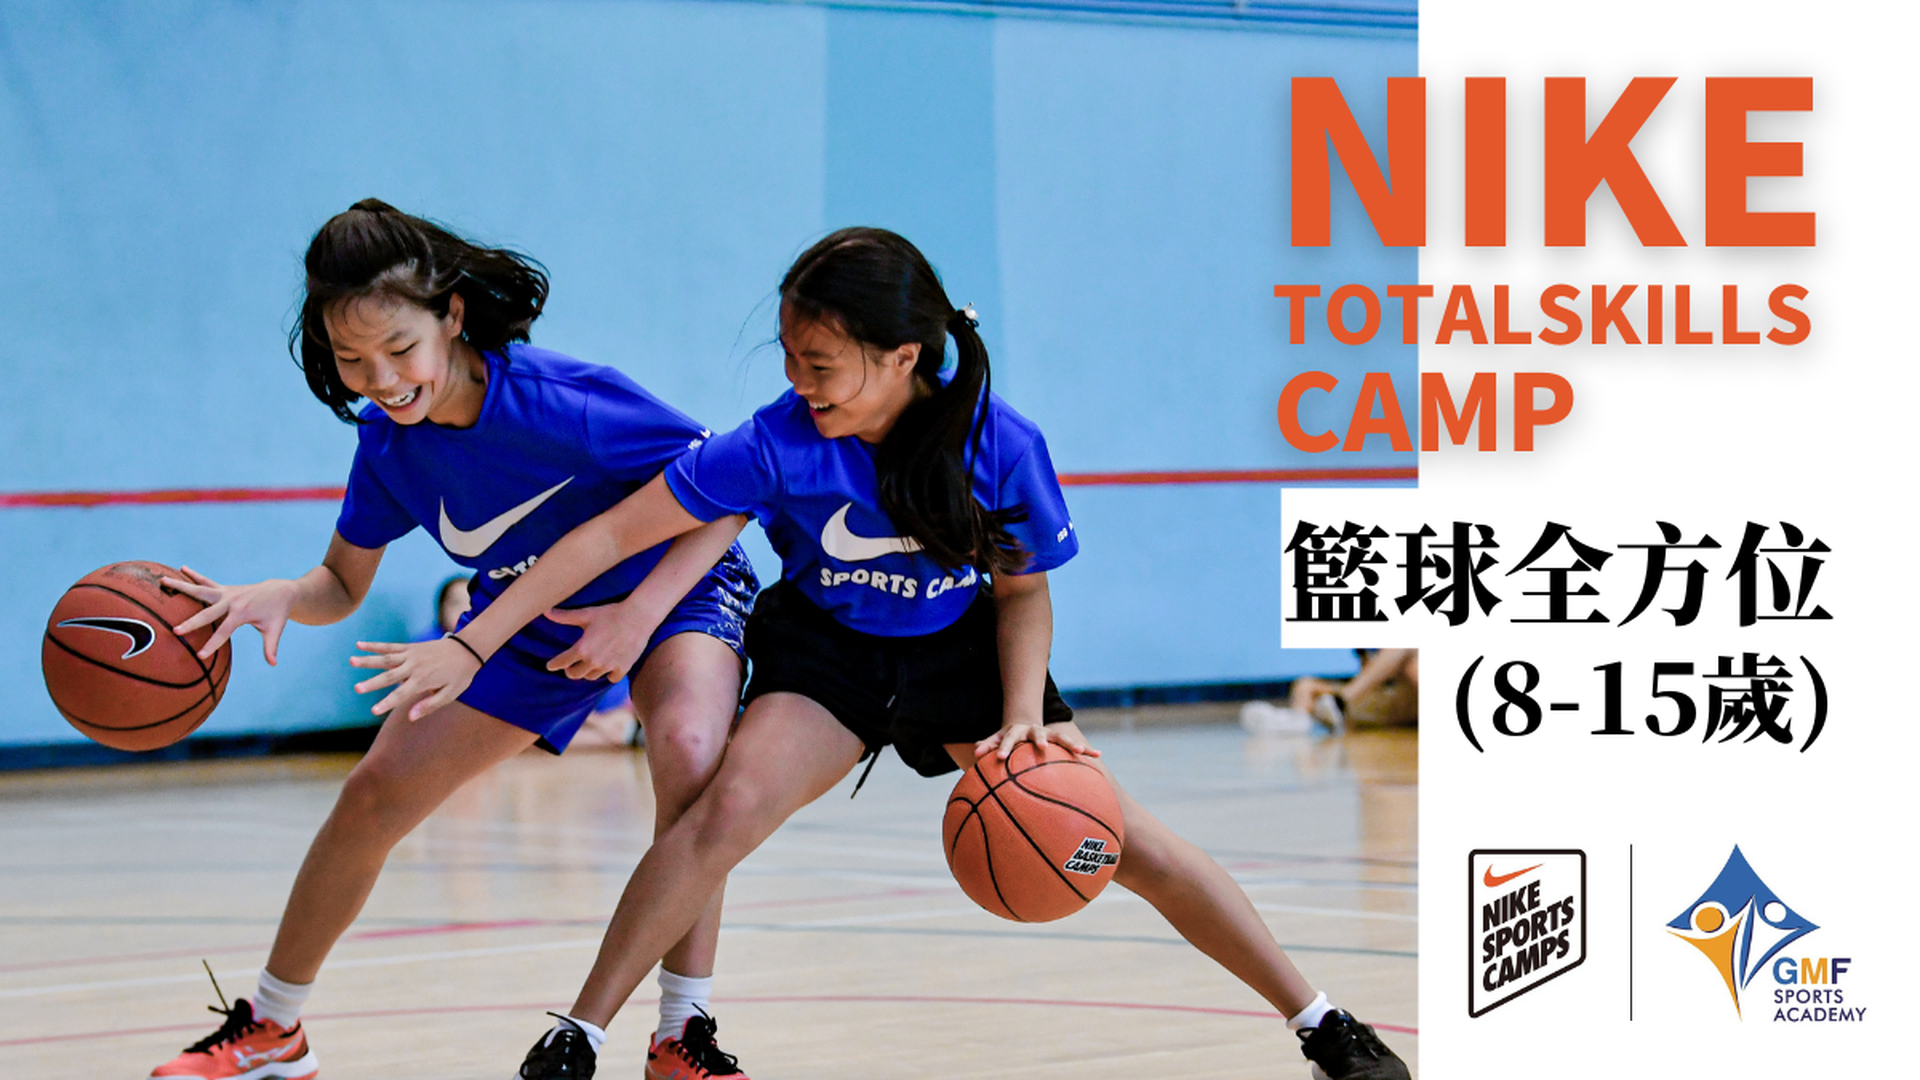 NIKE Total Skills Camp NIKE 籃球全方位 (8-15歲)